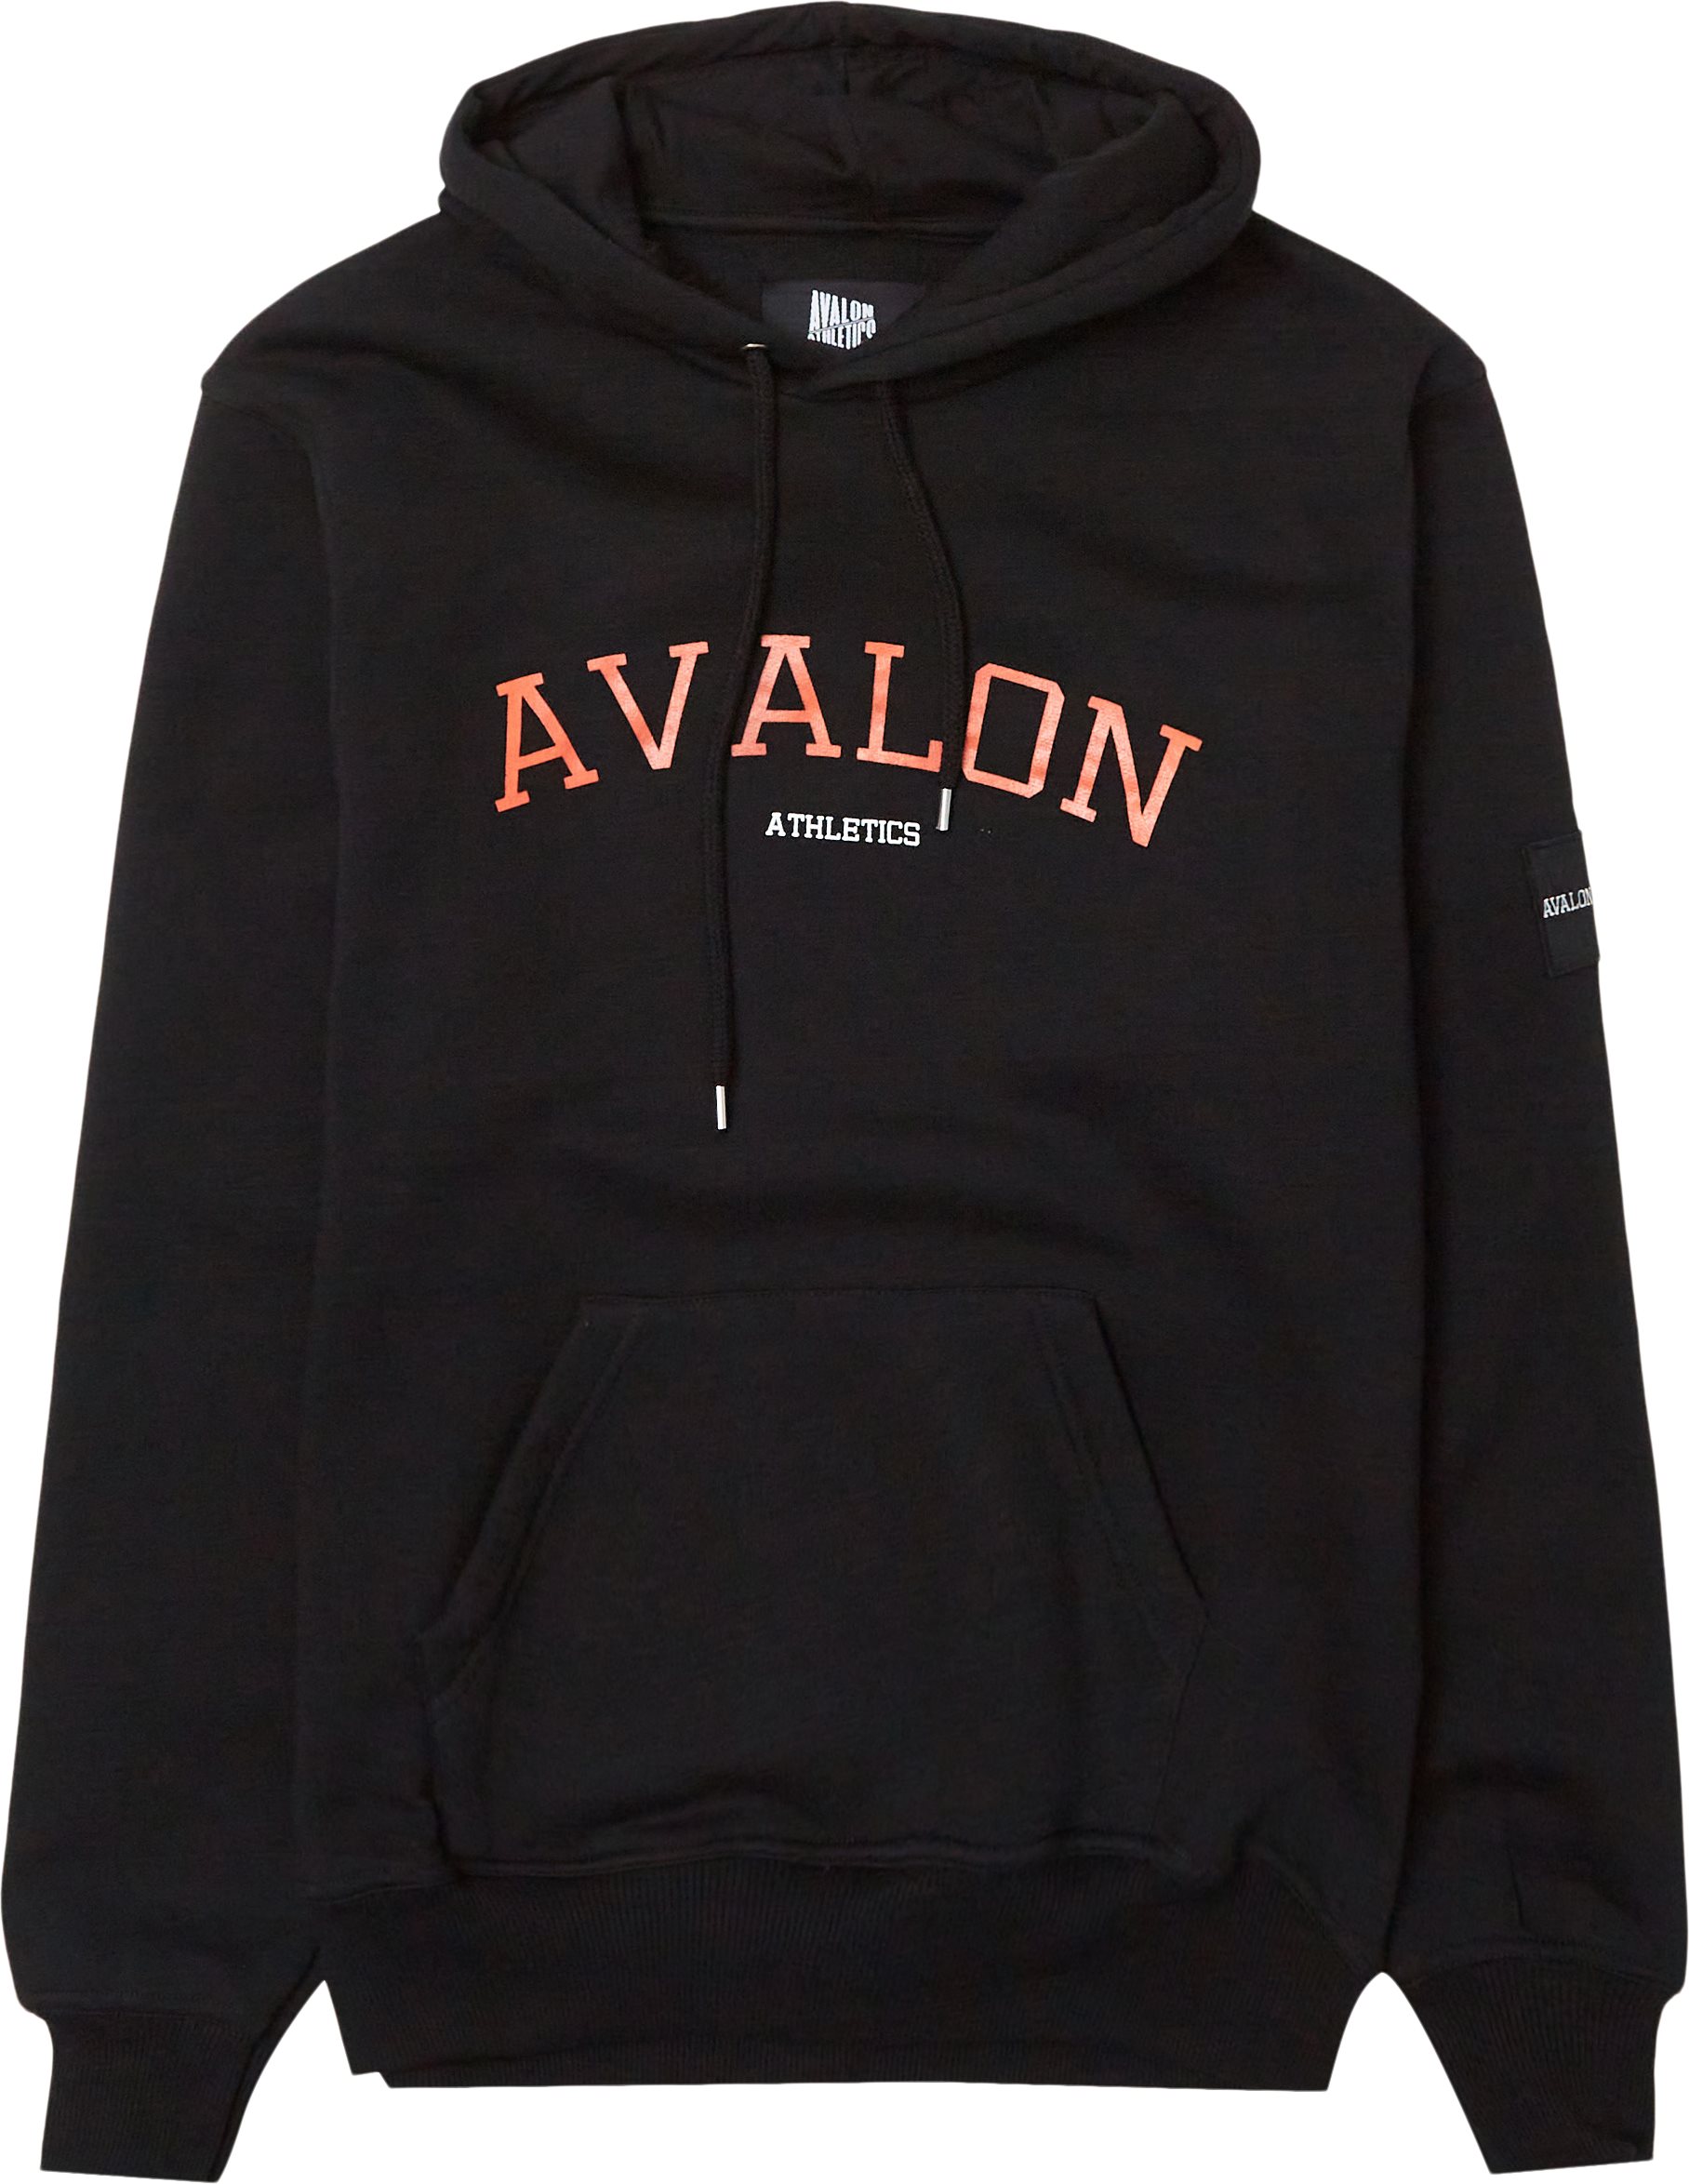 Avalon Athletics Sweatshirts HAVANA Black